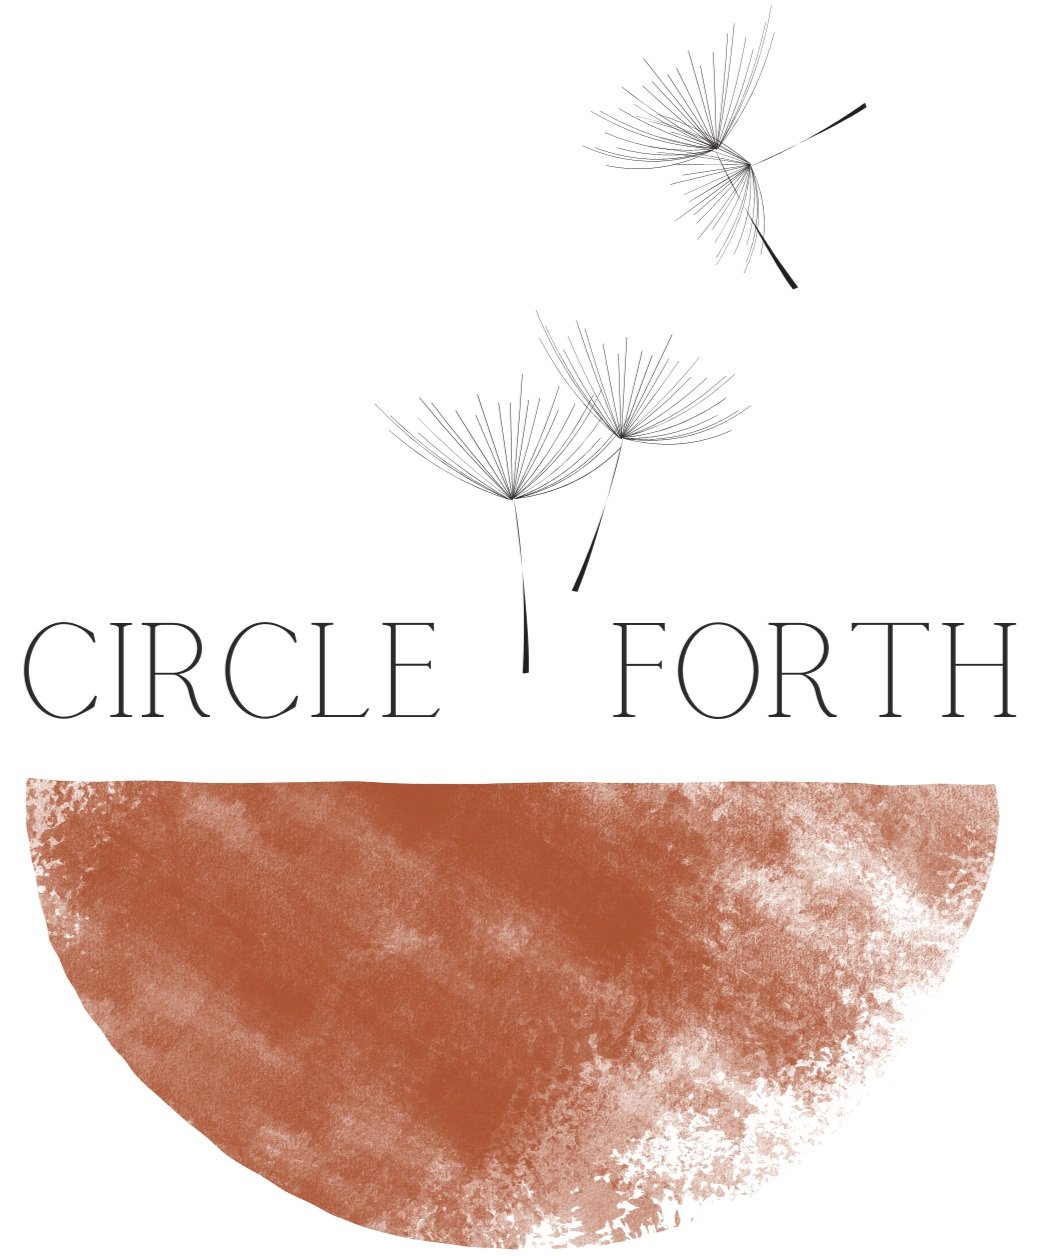 Circle Forth